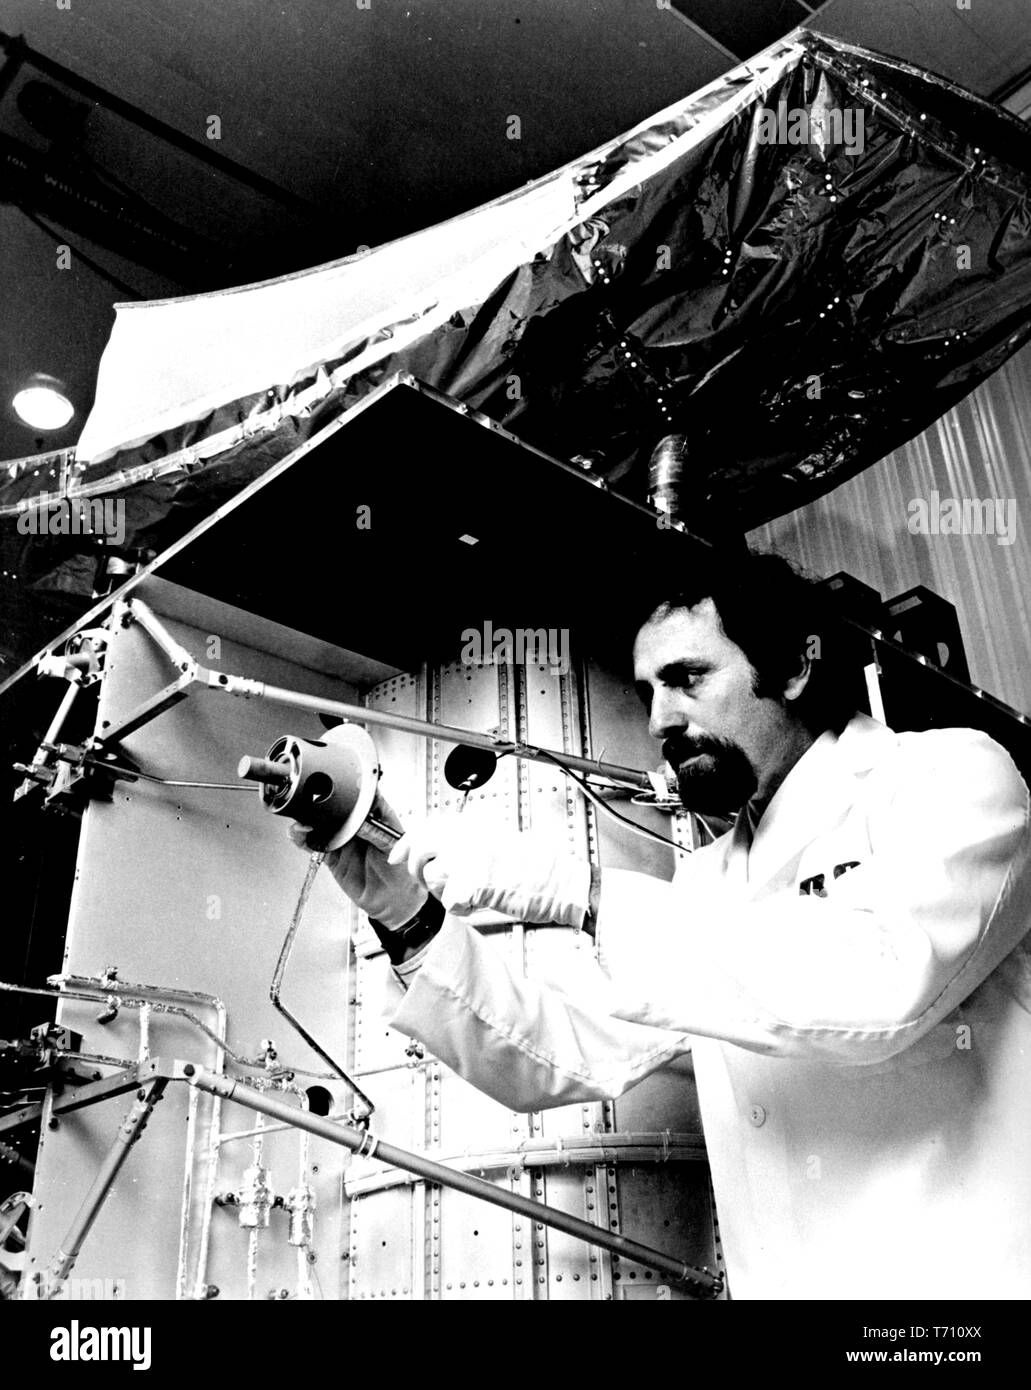 Ingegnere RCA Joel Bacher regolazione di un propulsore di propulsione dalla RCA Satcom domestici via satellite di comunicazione, Dicembre 10, 1975. Immagine cortesia Nazionale Aeronautica e Spaziale Administration (NASA). () Foto Stock